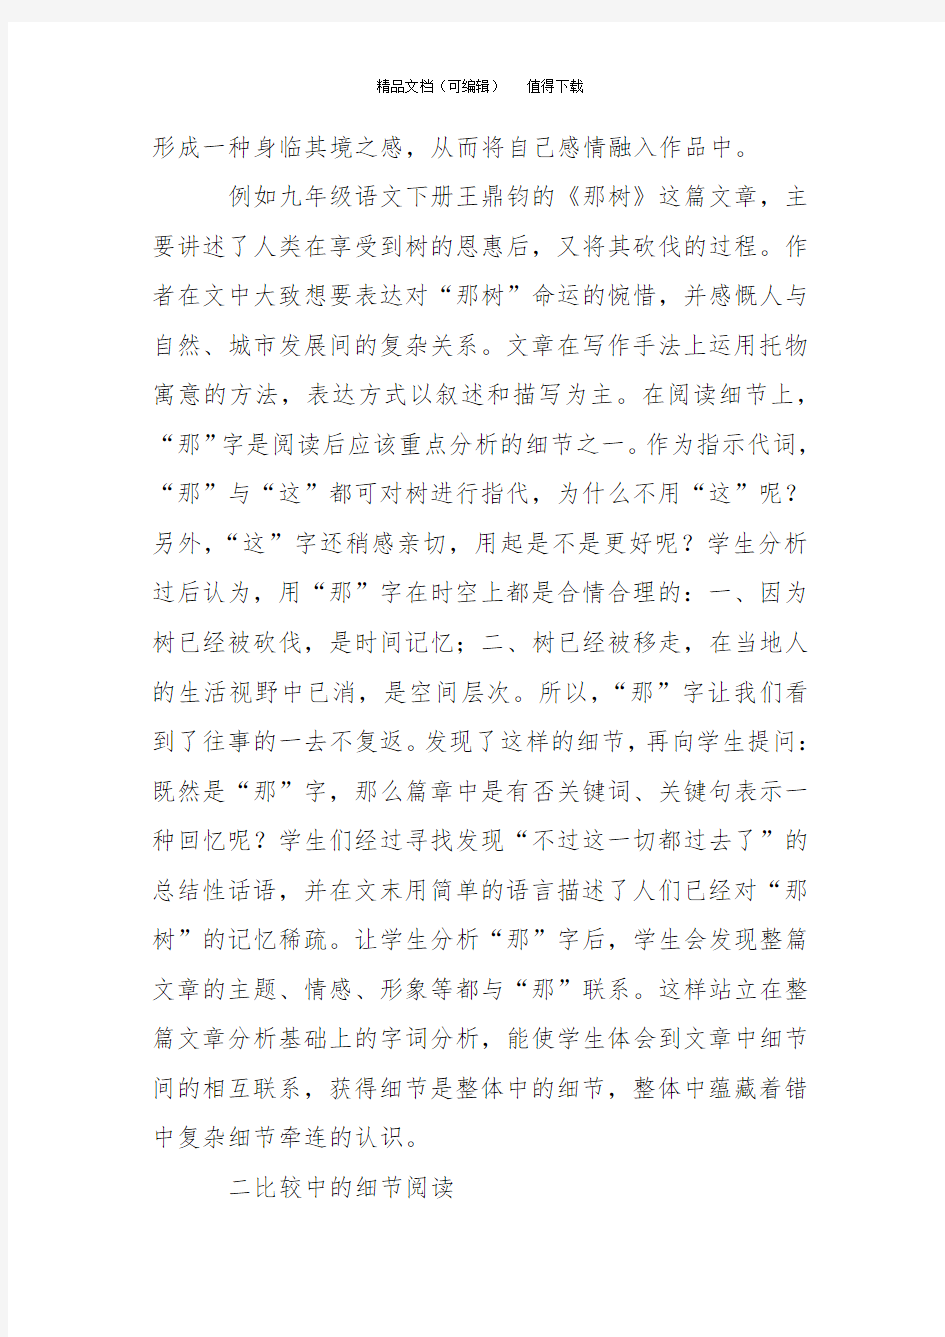 初中语文阅读教学中文本细读的策略分析